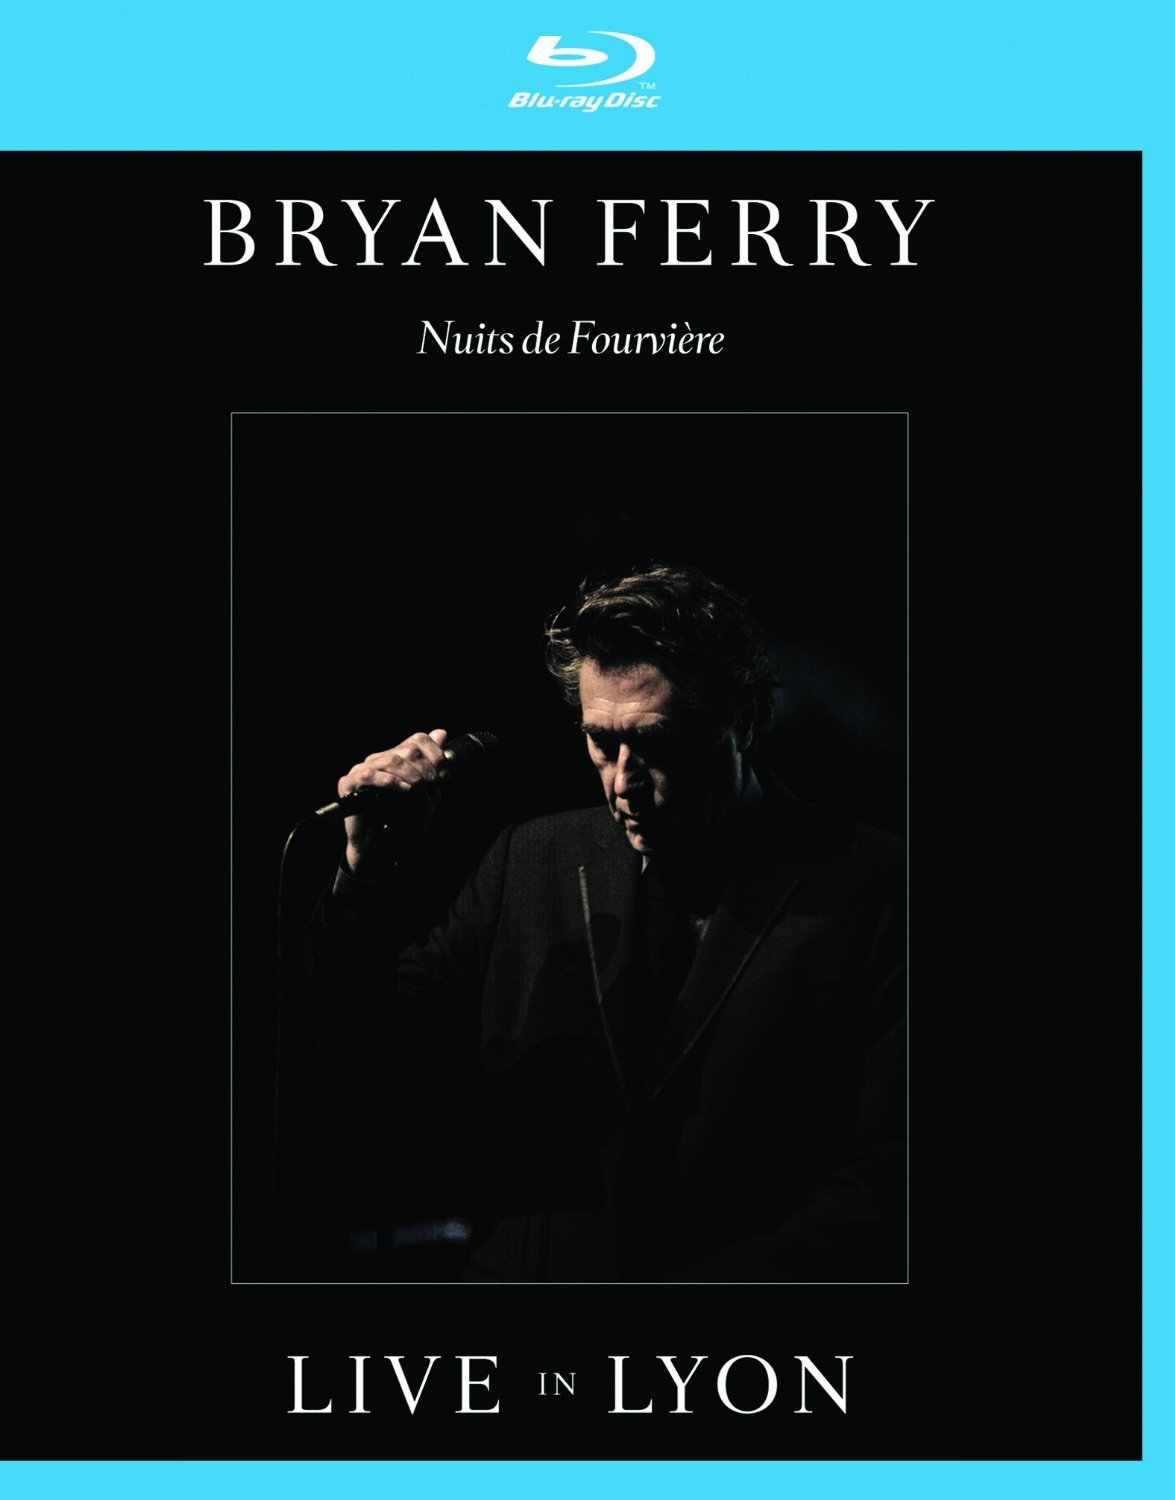 Bryan Ferry - Live in Lyon (2011) Blu-ray 1080i AVC DTS-HD MA 5.1 + BDRip 720p